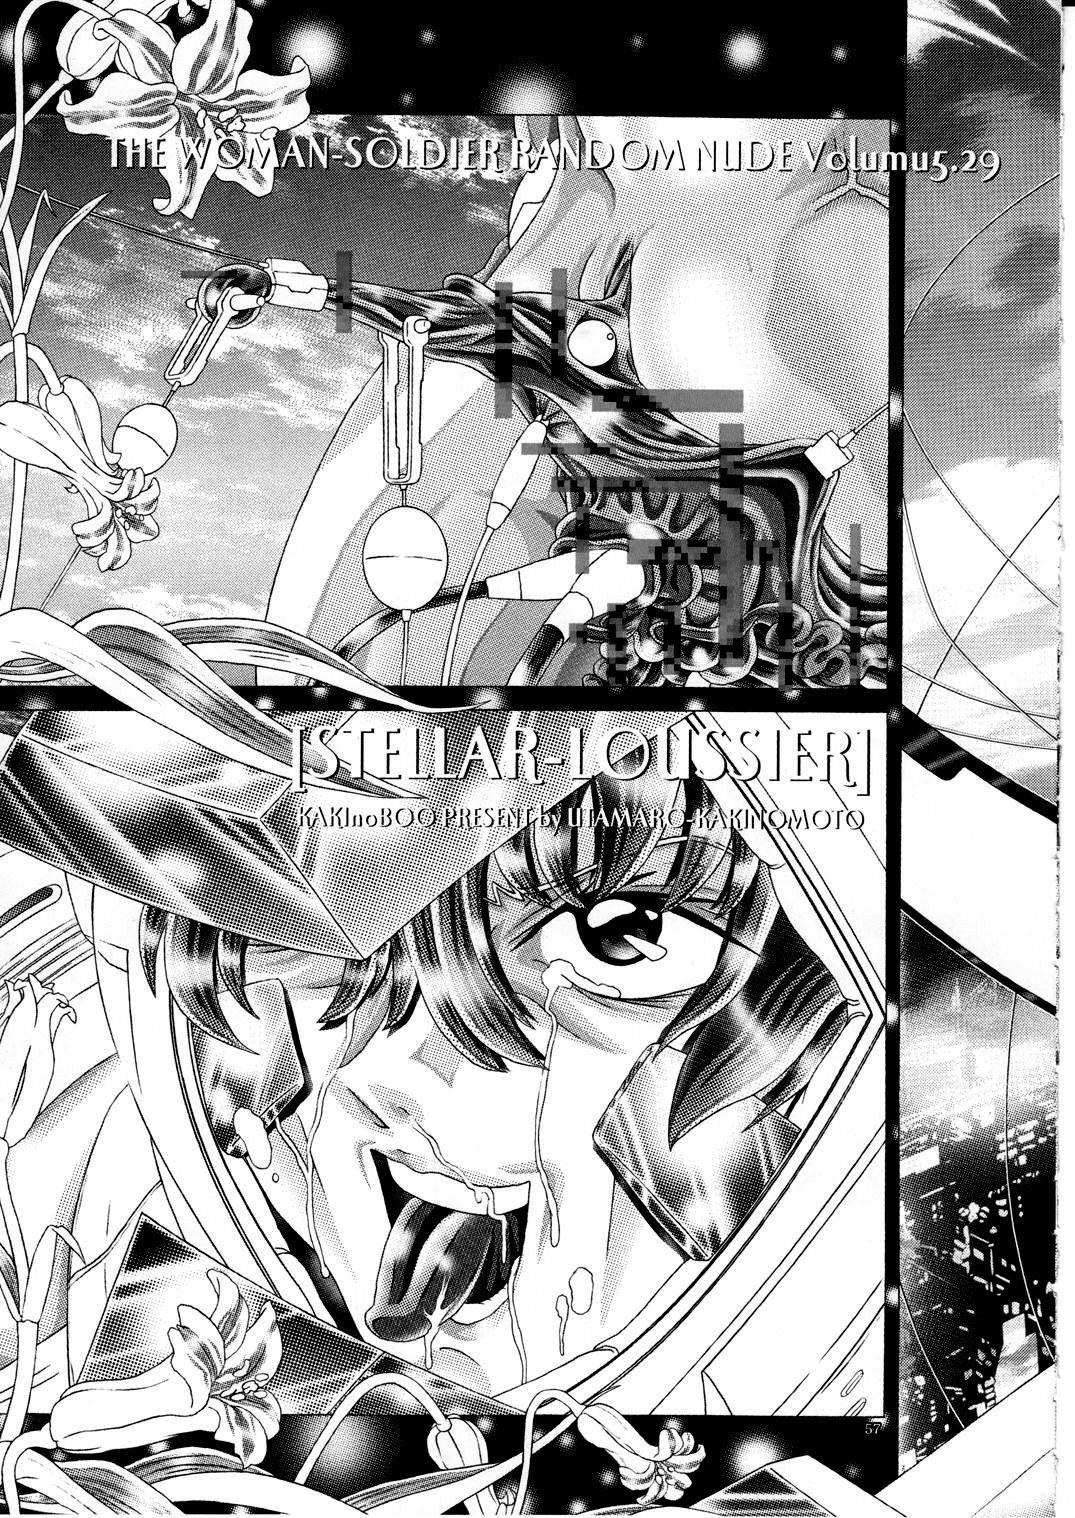 (C77) [Kaki no Boo (Kakinomoto Utamaro)] RANDOM NUDE Vol.5 92 〔STELLAR LOUSSIER〕 (Gundam Seed Destiny)【chinese】 57